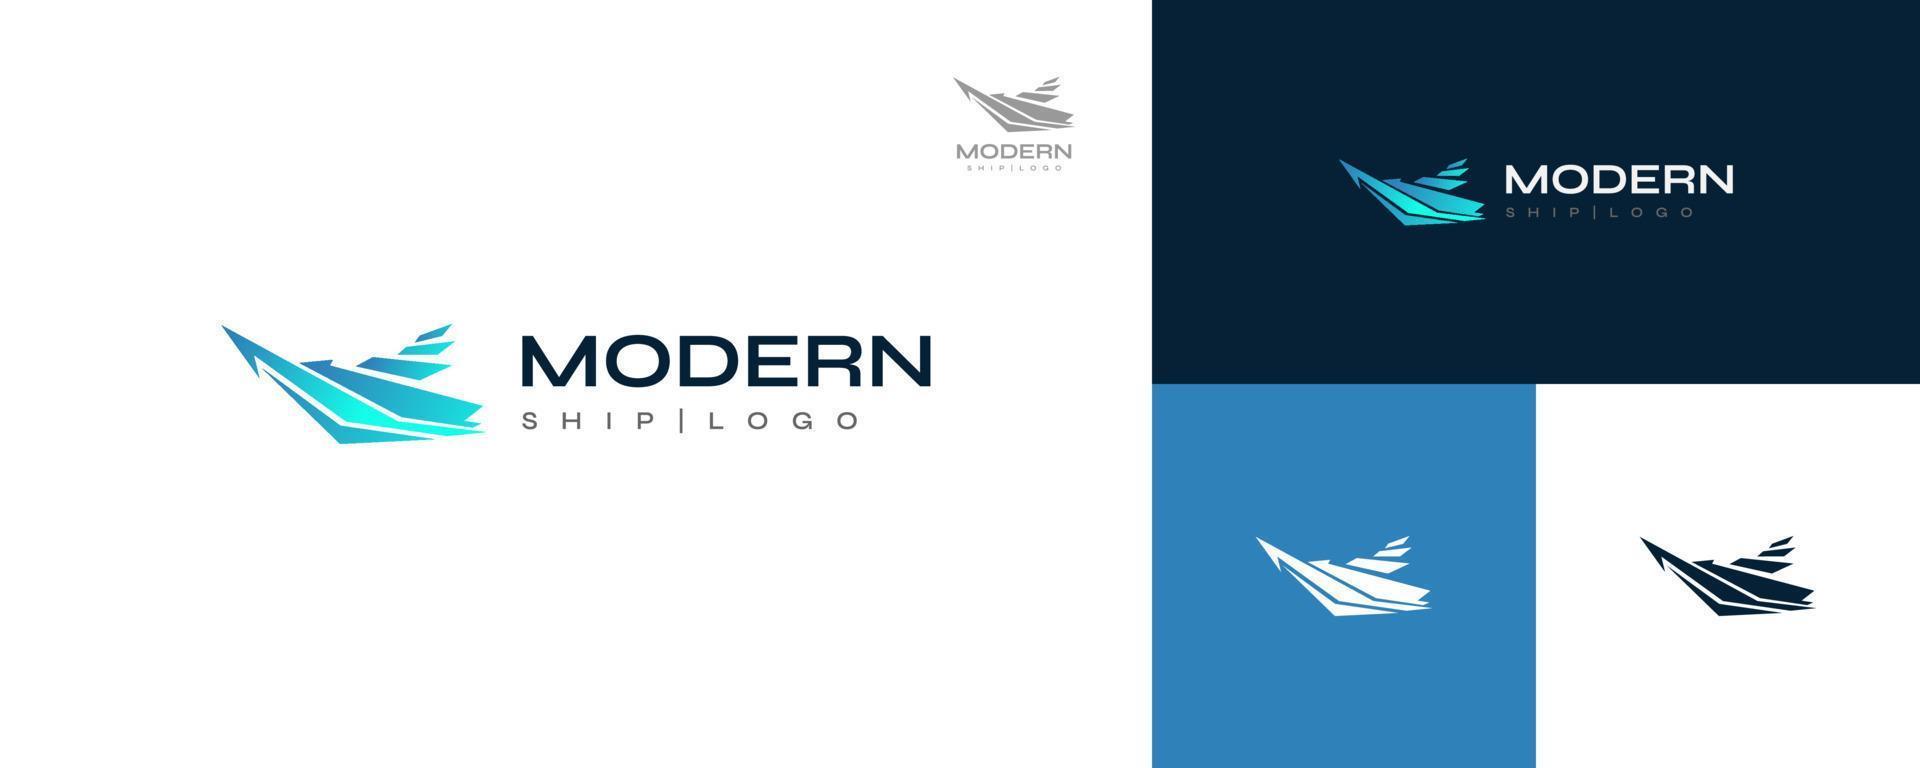 diseño de logotipo de barco moderno y futurista en concepto de gradiente azul. crucero, logotipo o icono de yate vector